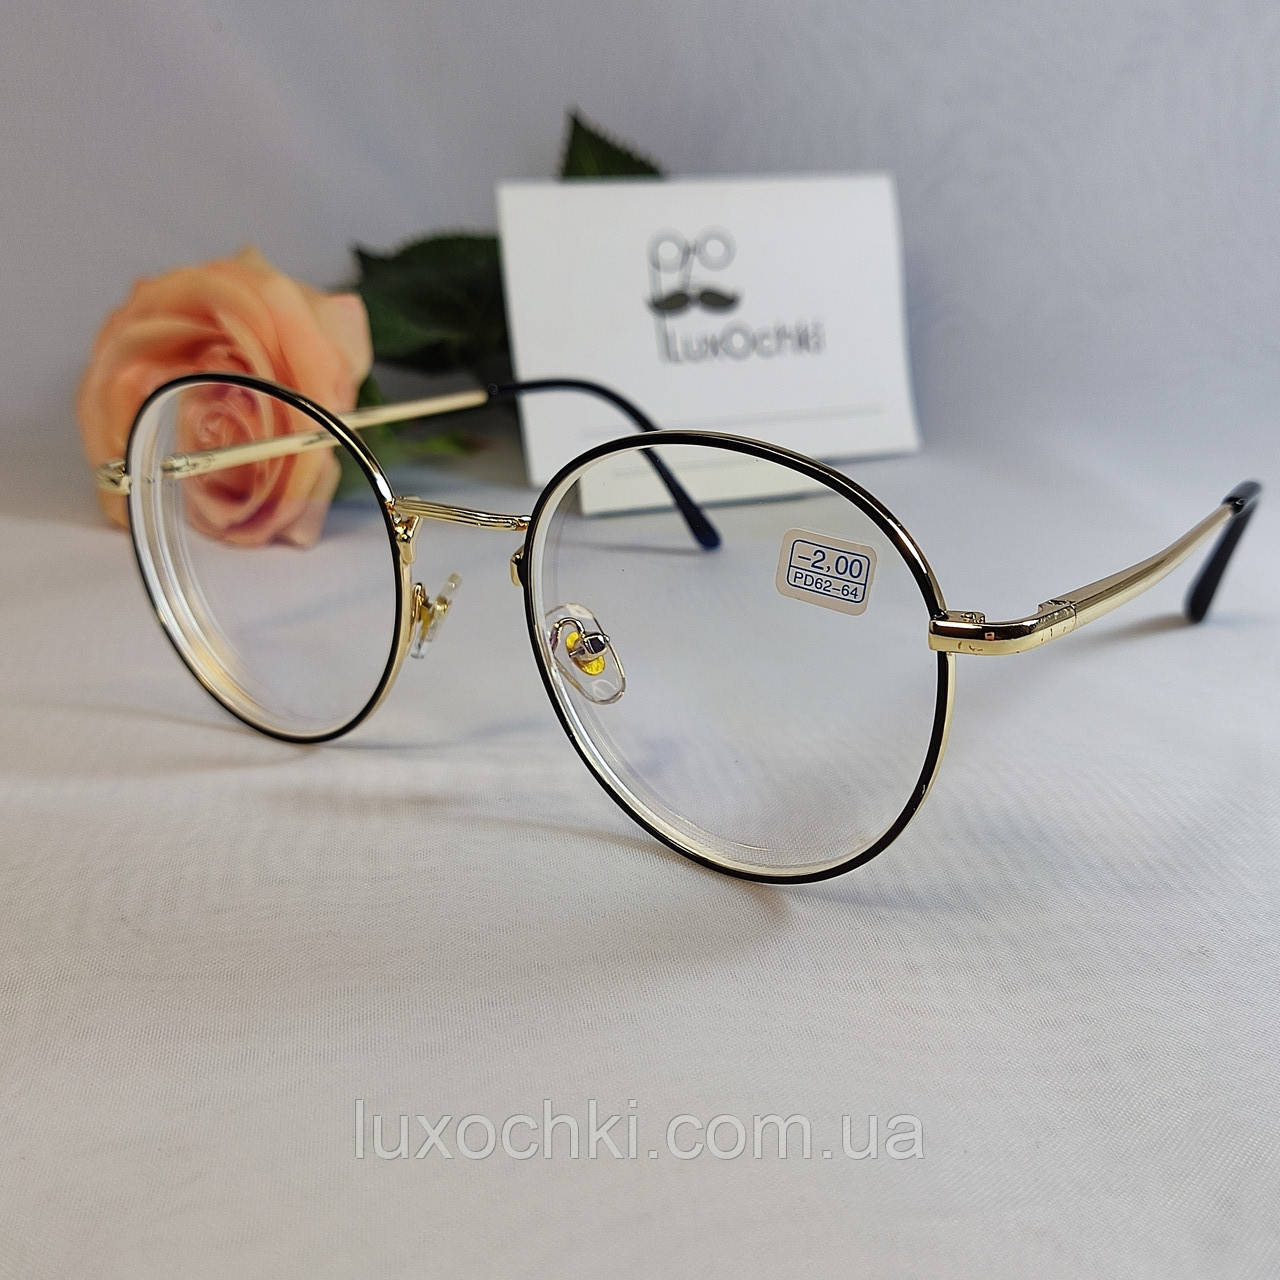 -3.0 Готовые минусовые круглые очки для коррекции зрения в тонкой металлической оправе